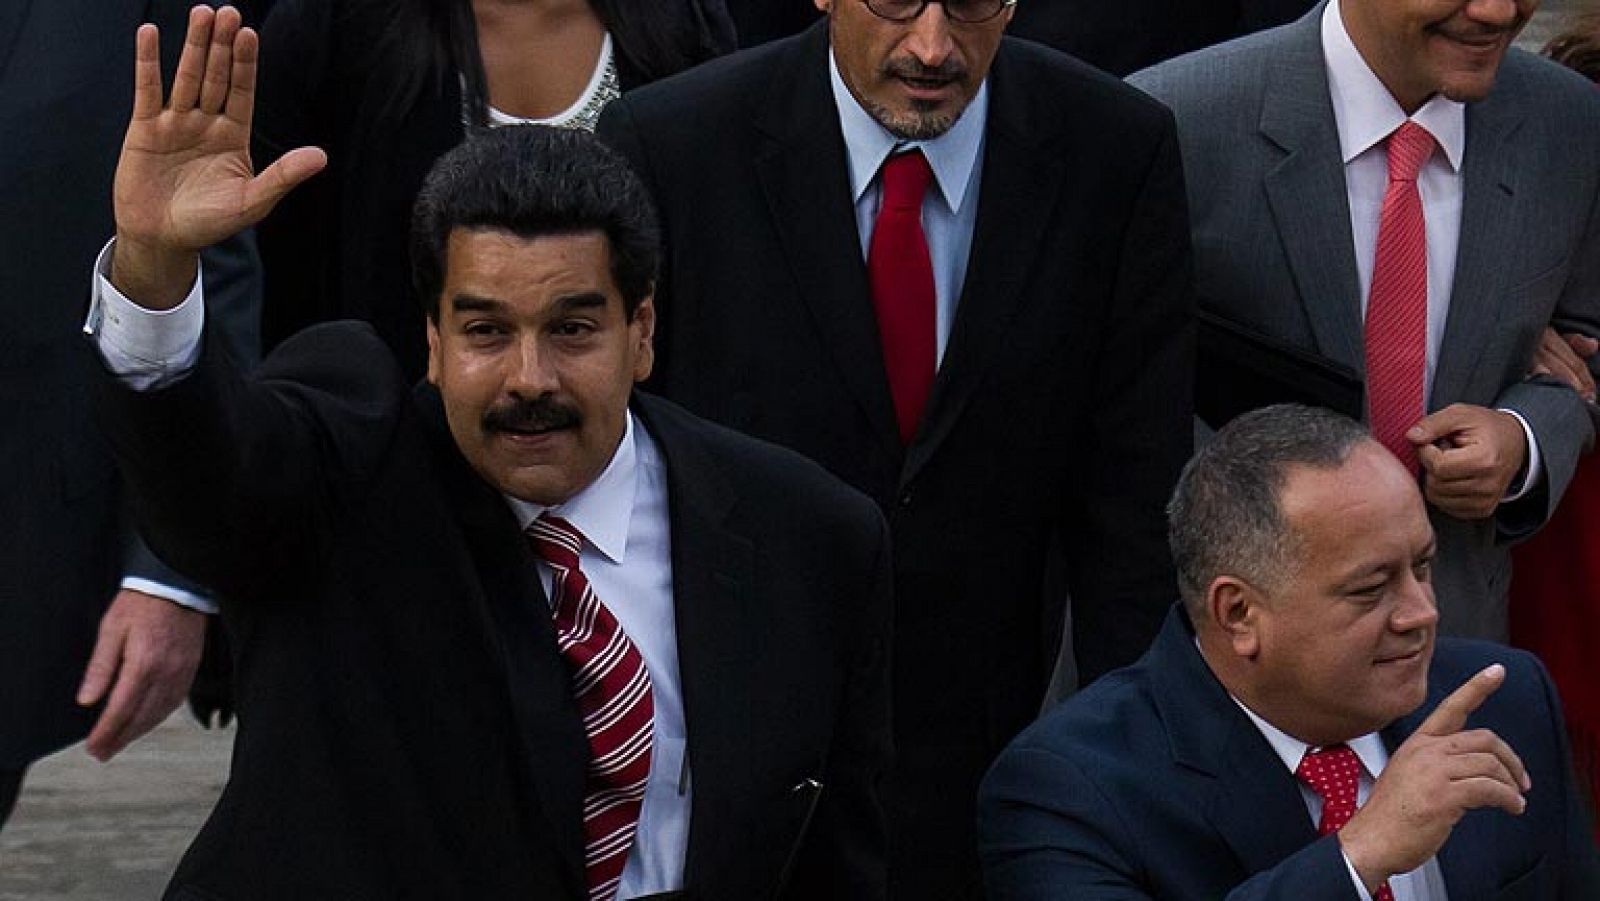 El vicepresidente de Venezuela, Nicolás Maduro, ha afirmado durante la presentación de su informe de Memoria y Cuenta en la Asamblea Nacional que en Venezuela no hay "gobiernito" sino una revolución y ha admitido que la reincidencia del cáncer del presidente, Hugo Chávez, ha sido un "golpe muy duro". "Está enfermo porque entregó su vida por los que no tienen nada", ha dicho. 